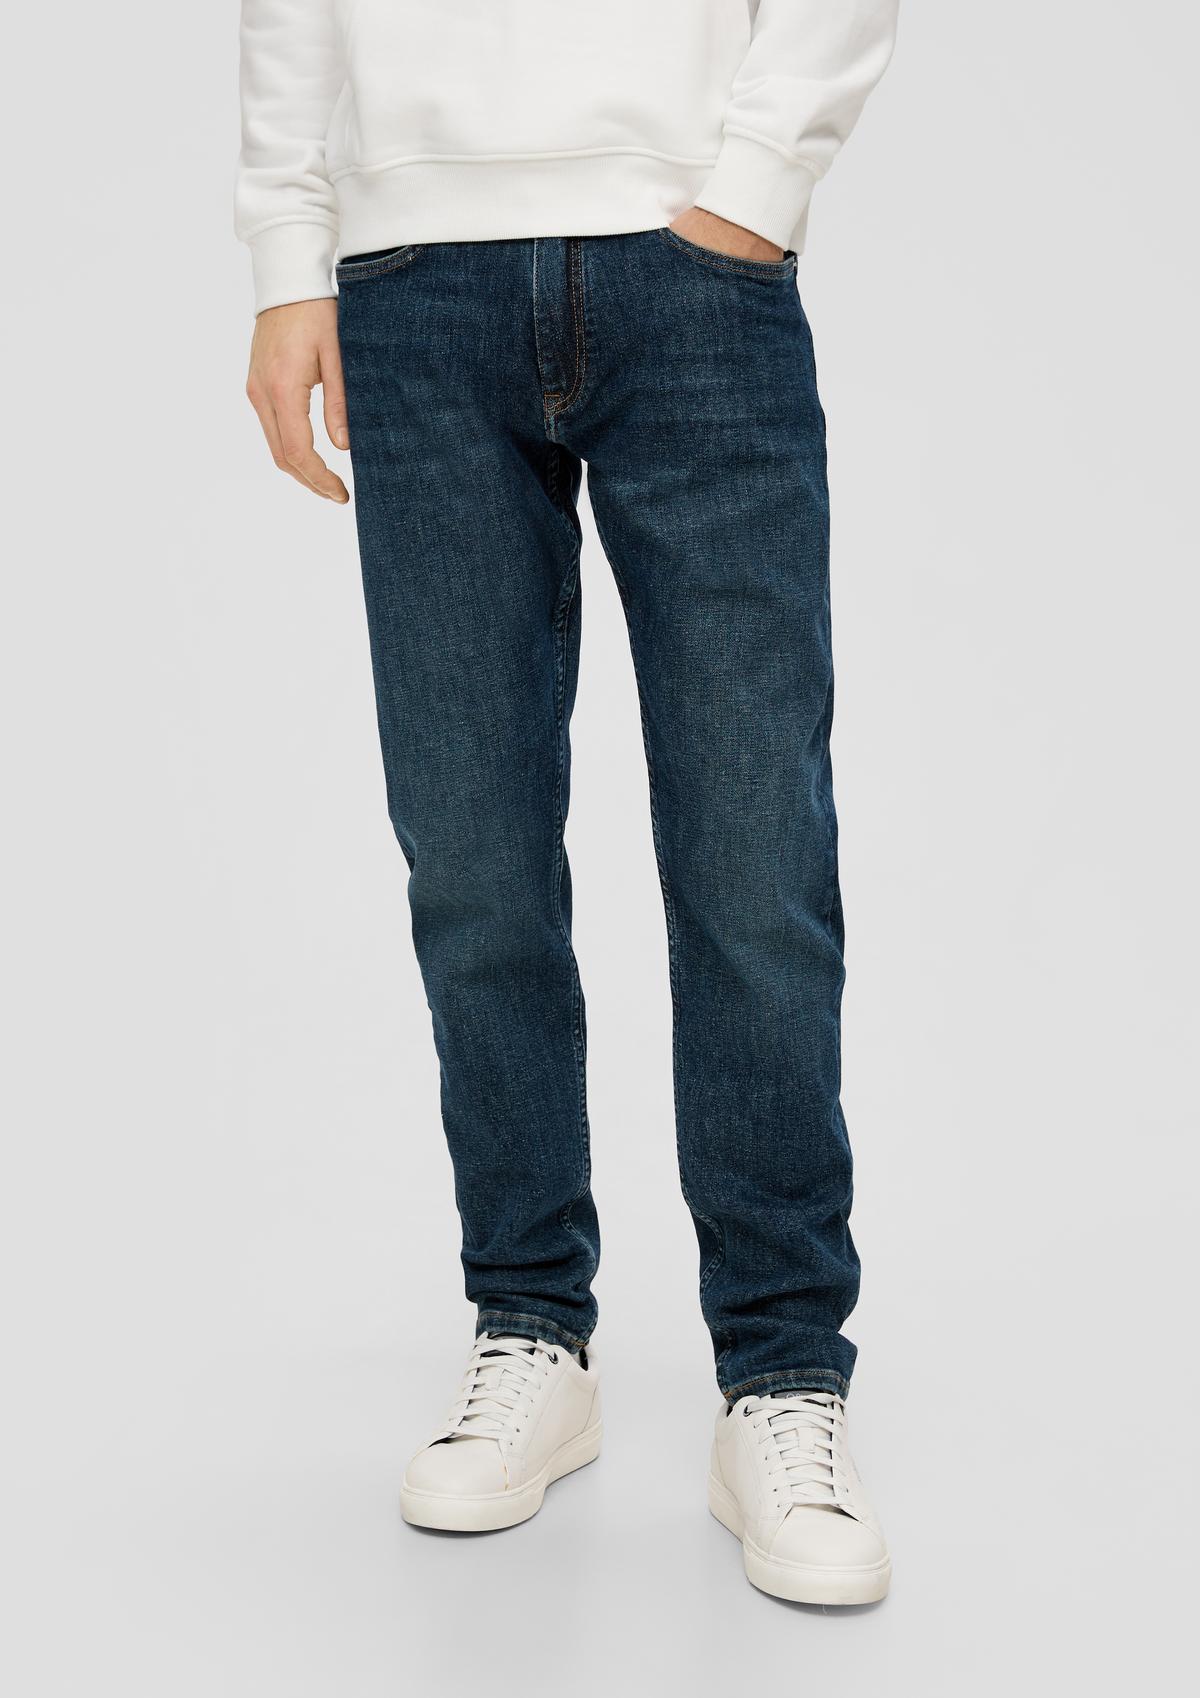 s.Oliver Jeans hlače/kroj Regular Fit/High Rise/Tapered Leg